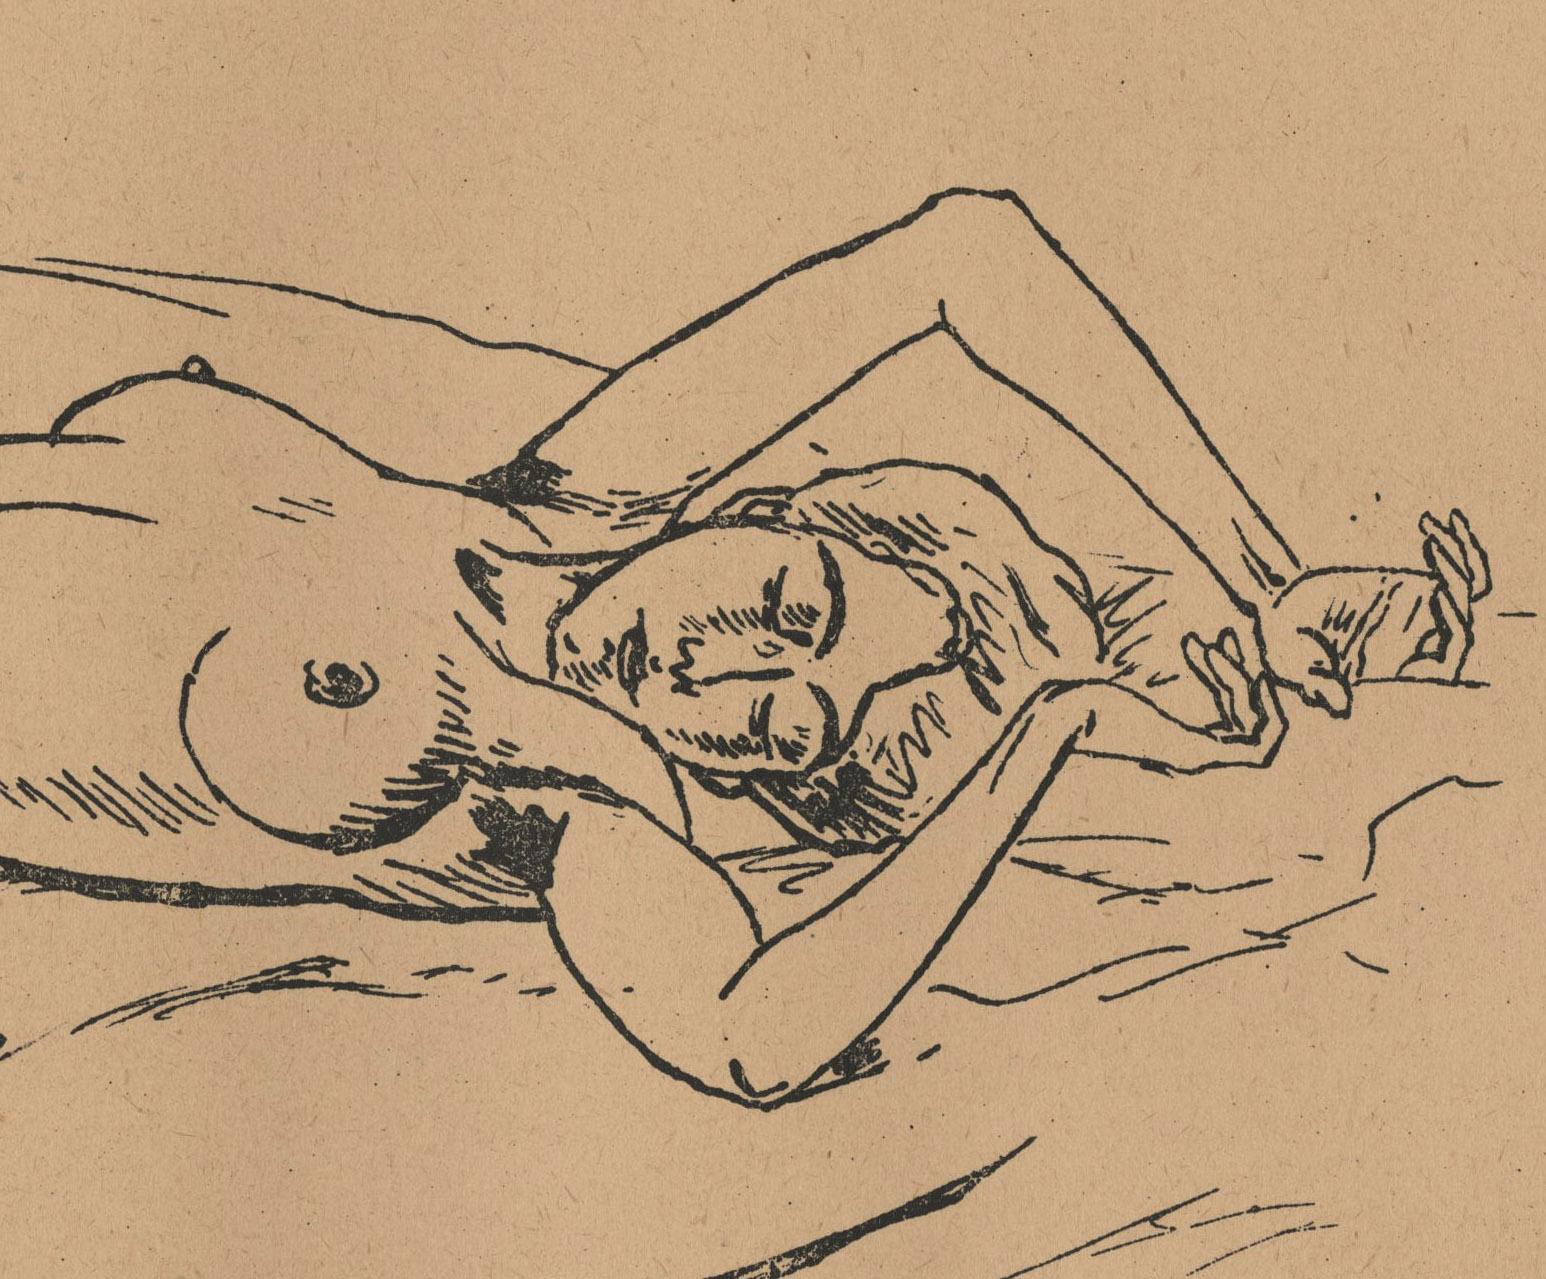 Liegender Akt auf Bett – Print von Rudolf Bauer